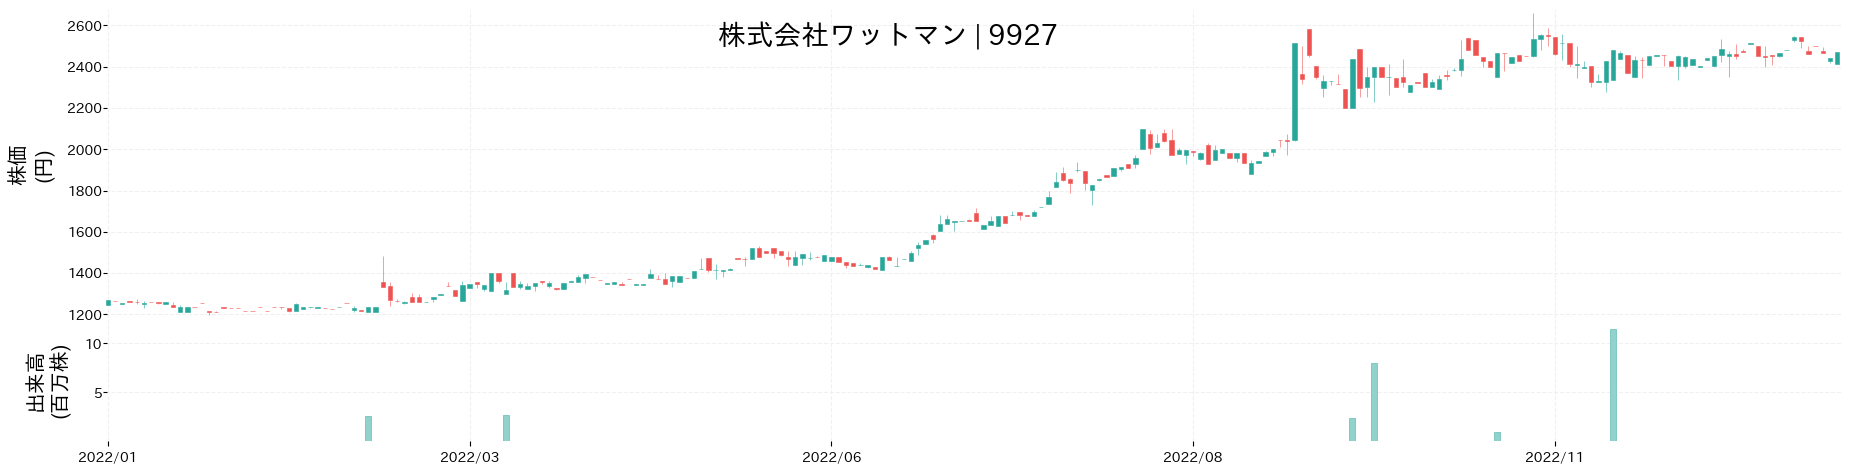 ワットマンの株価推移(2022)